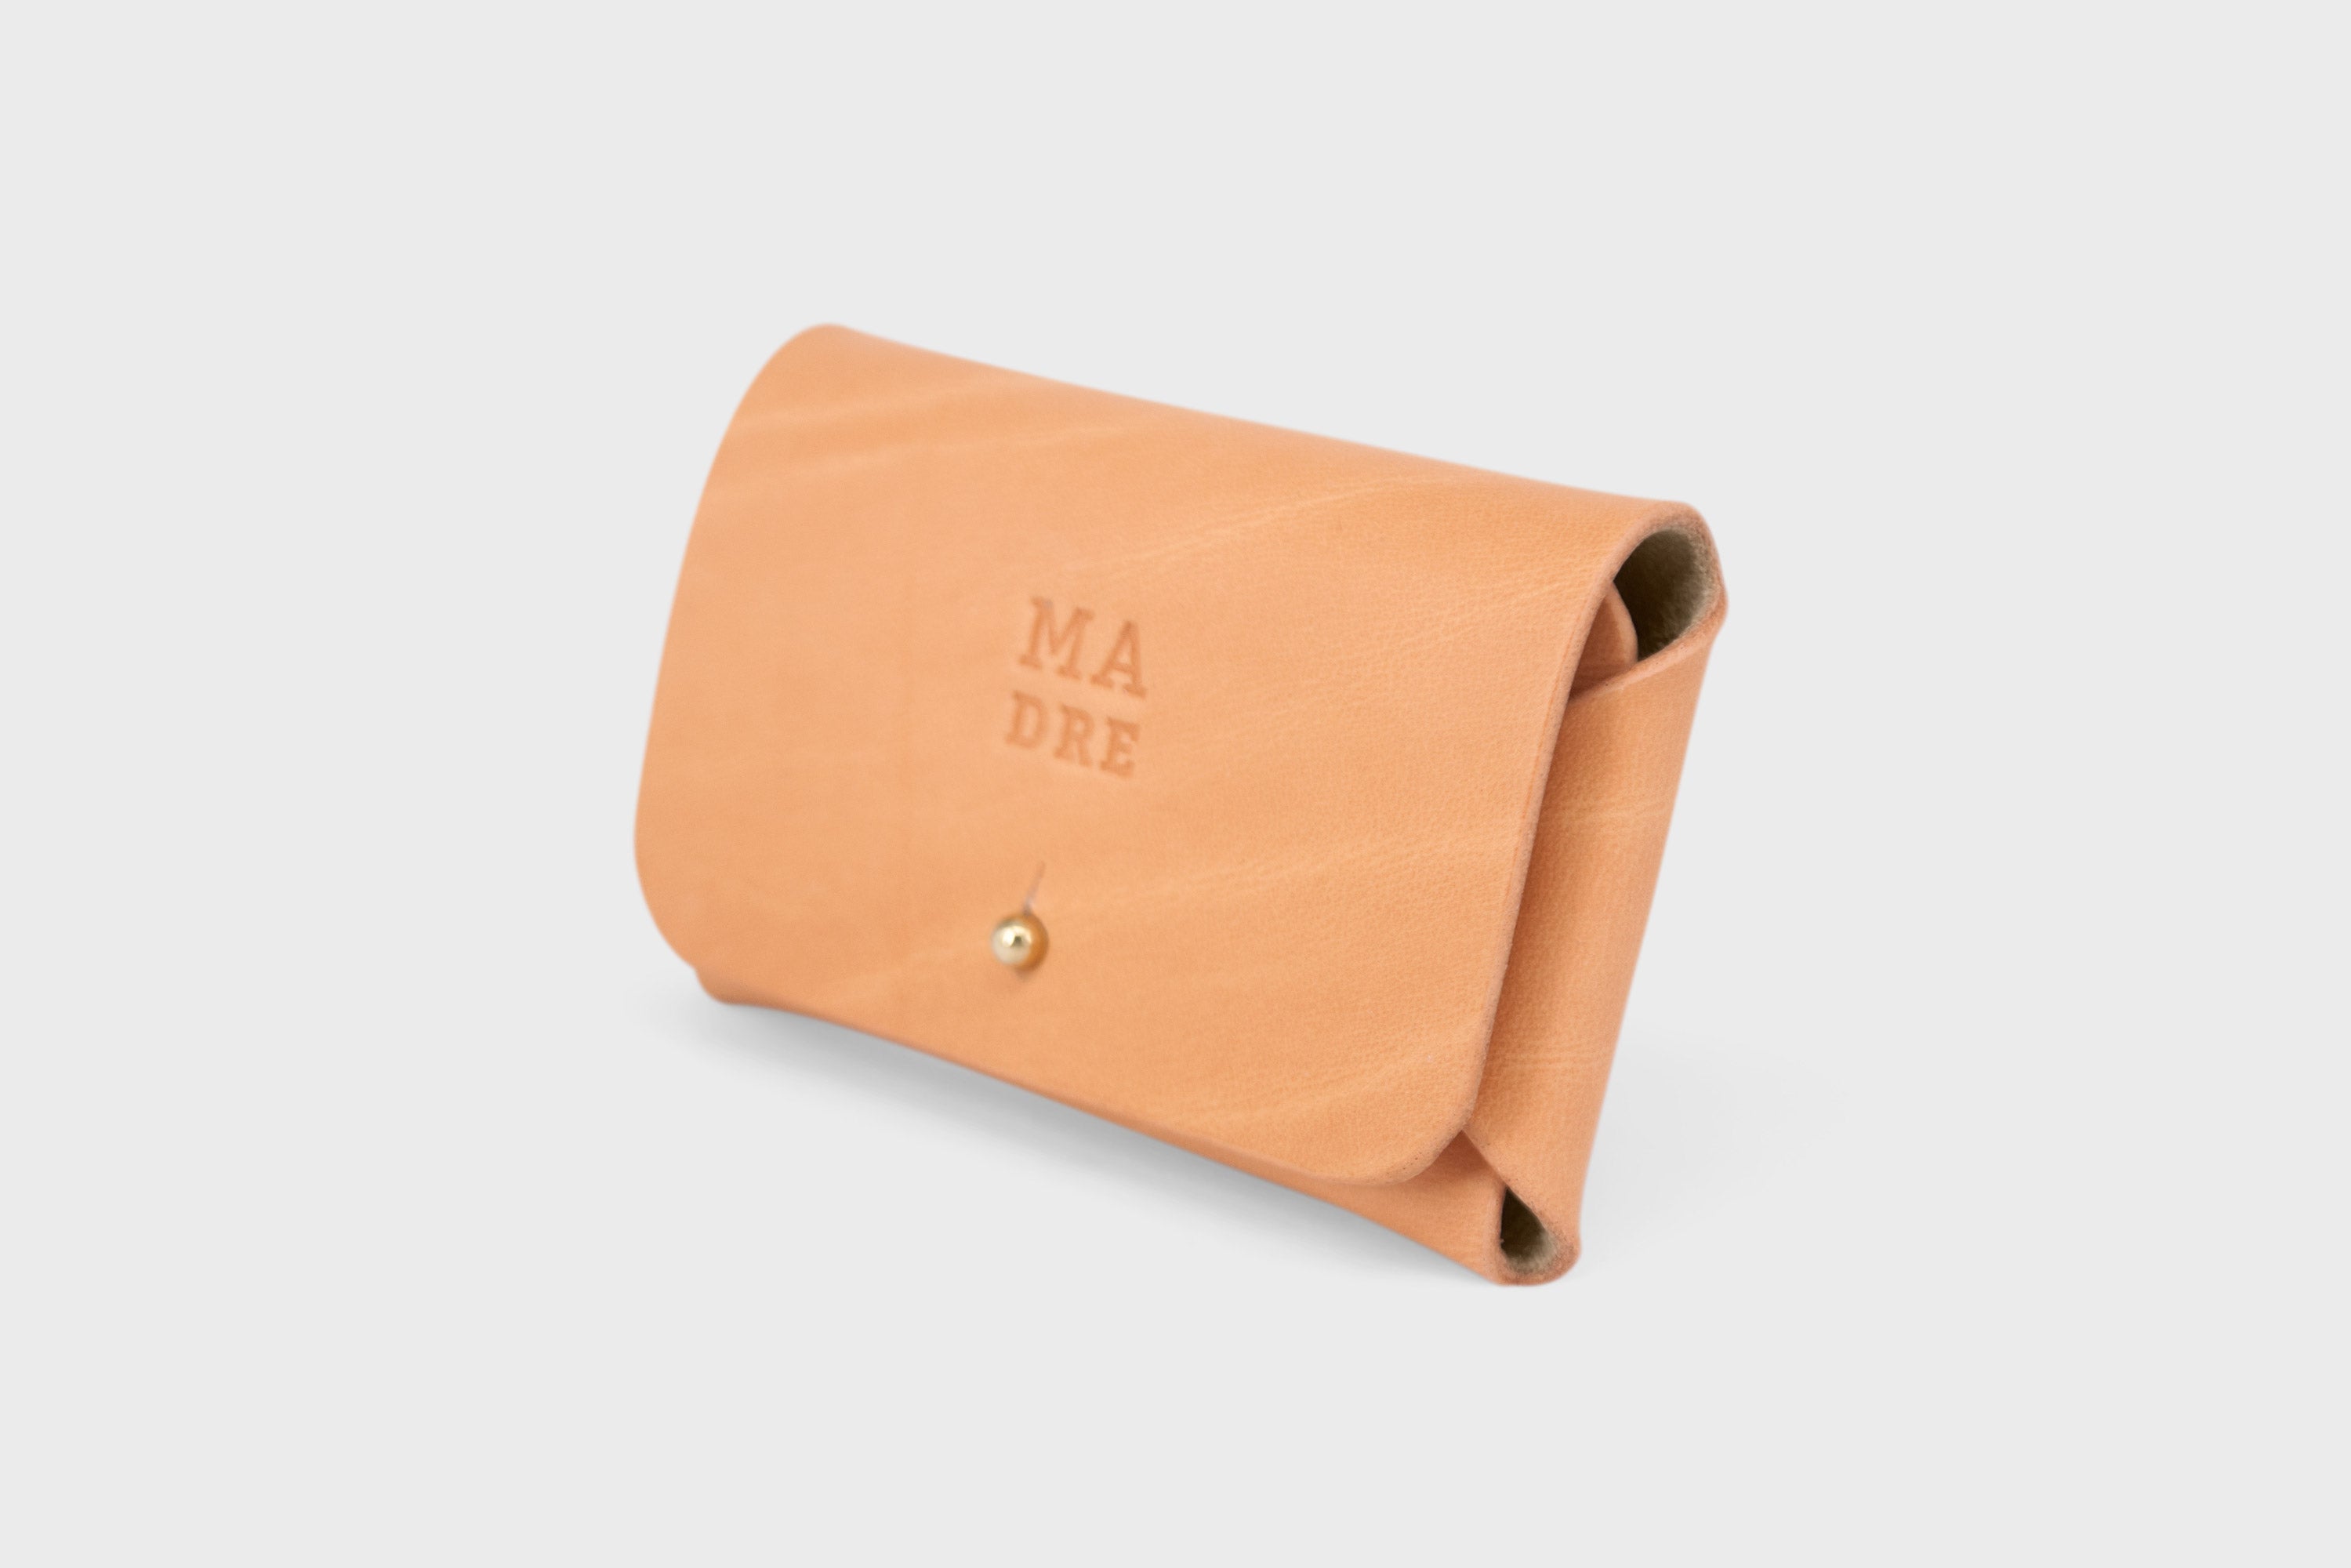 Leather wallet cardholder horizontal design brown color minimalist design atelier madre manuel dreesmann barcelona